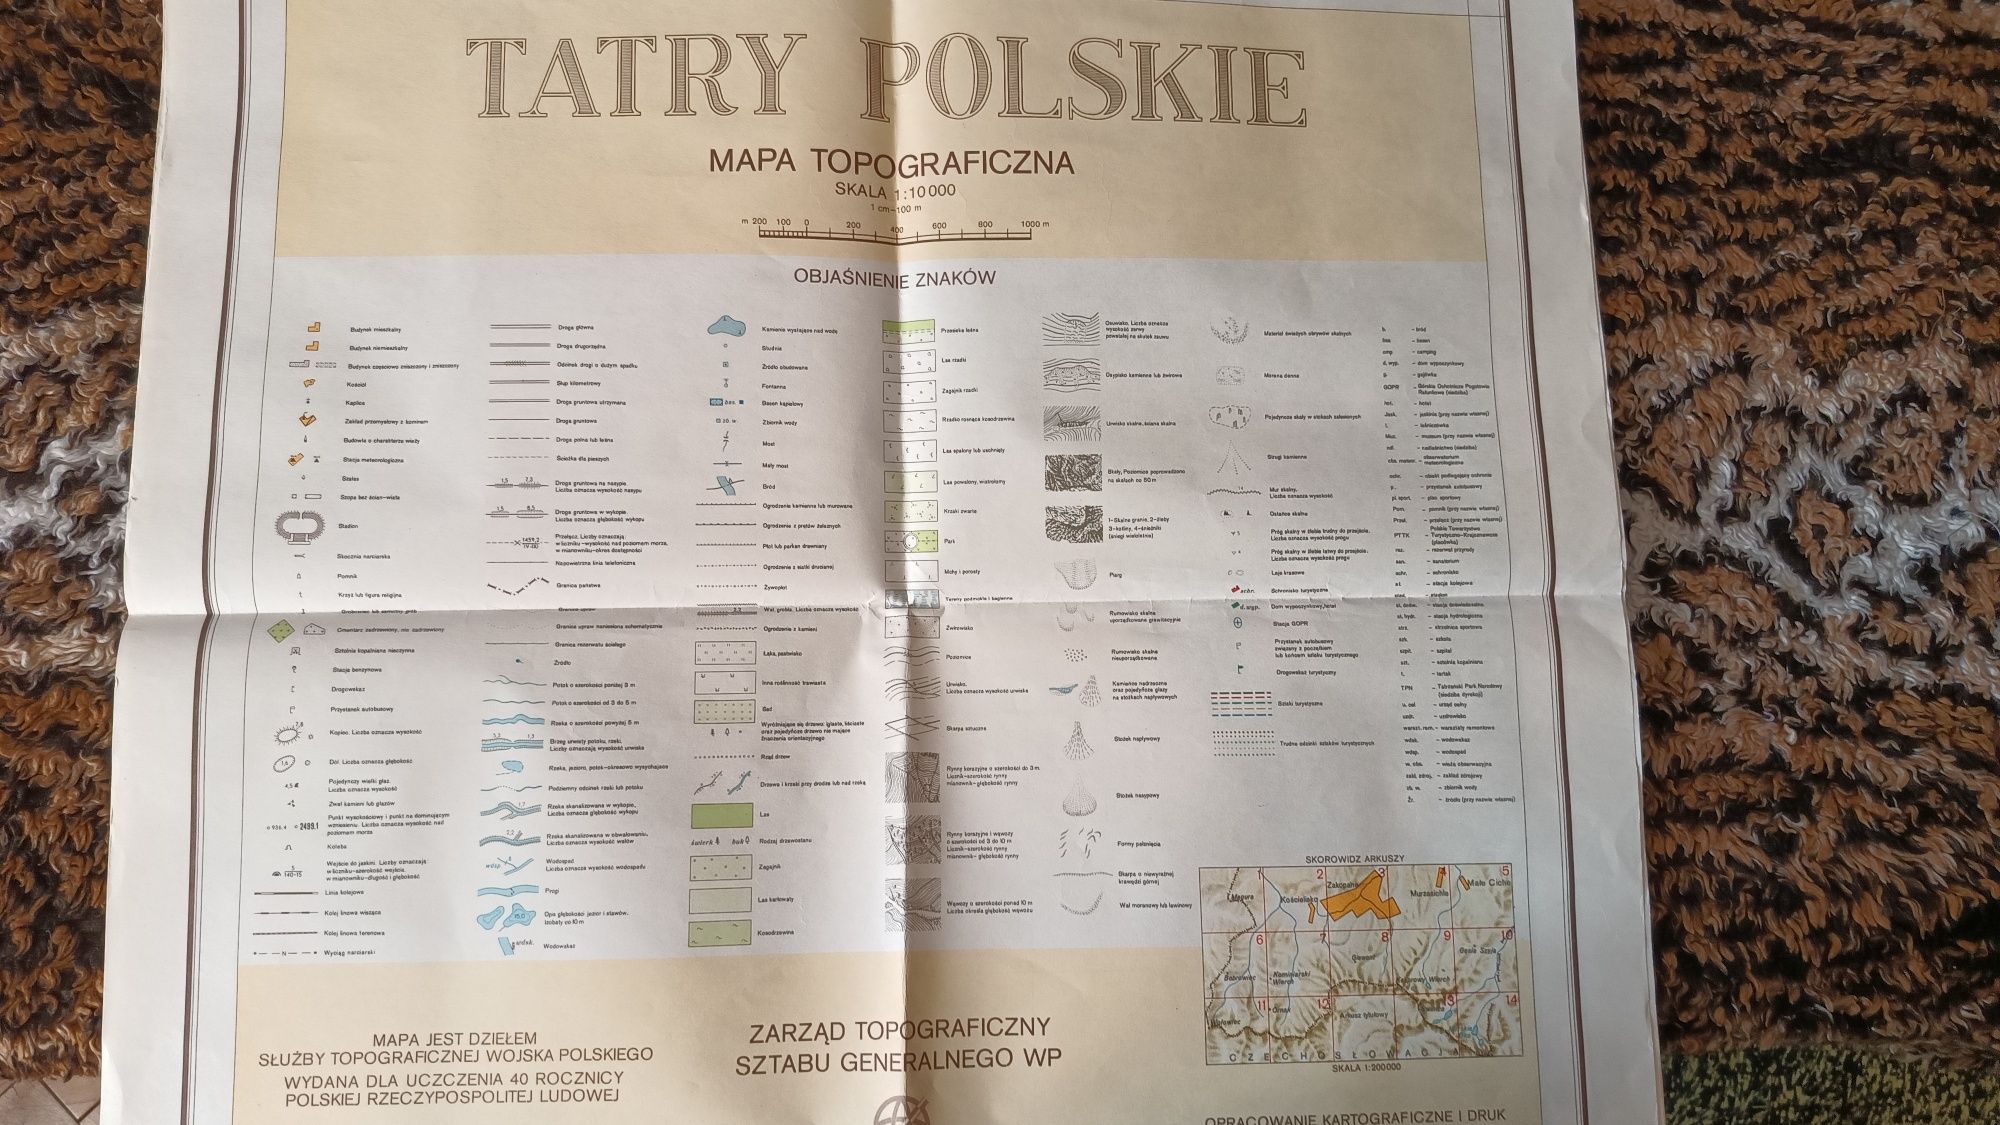 Tatry Polskie mapa topograficzna